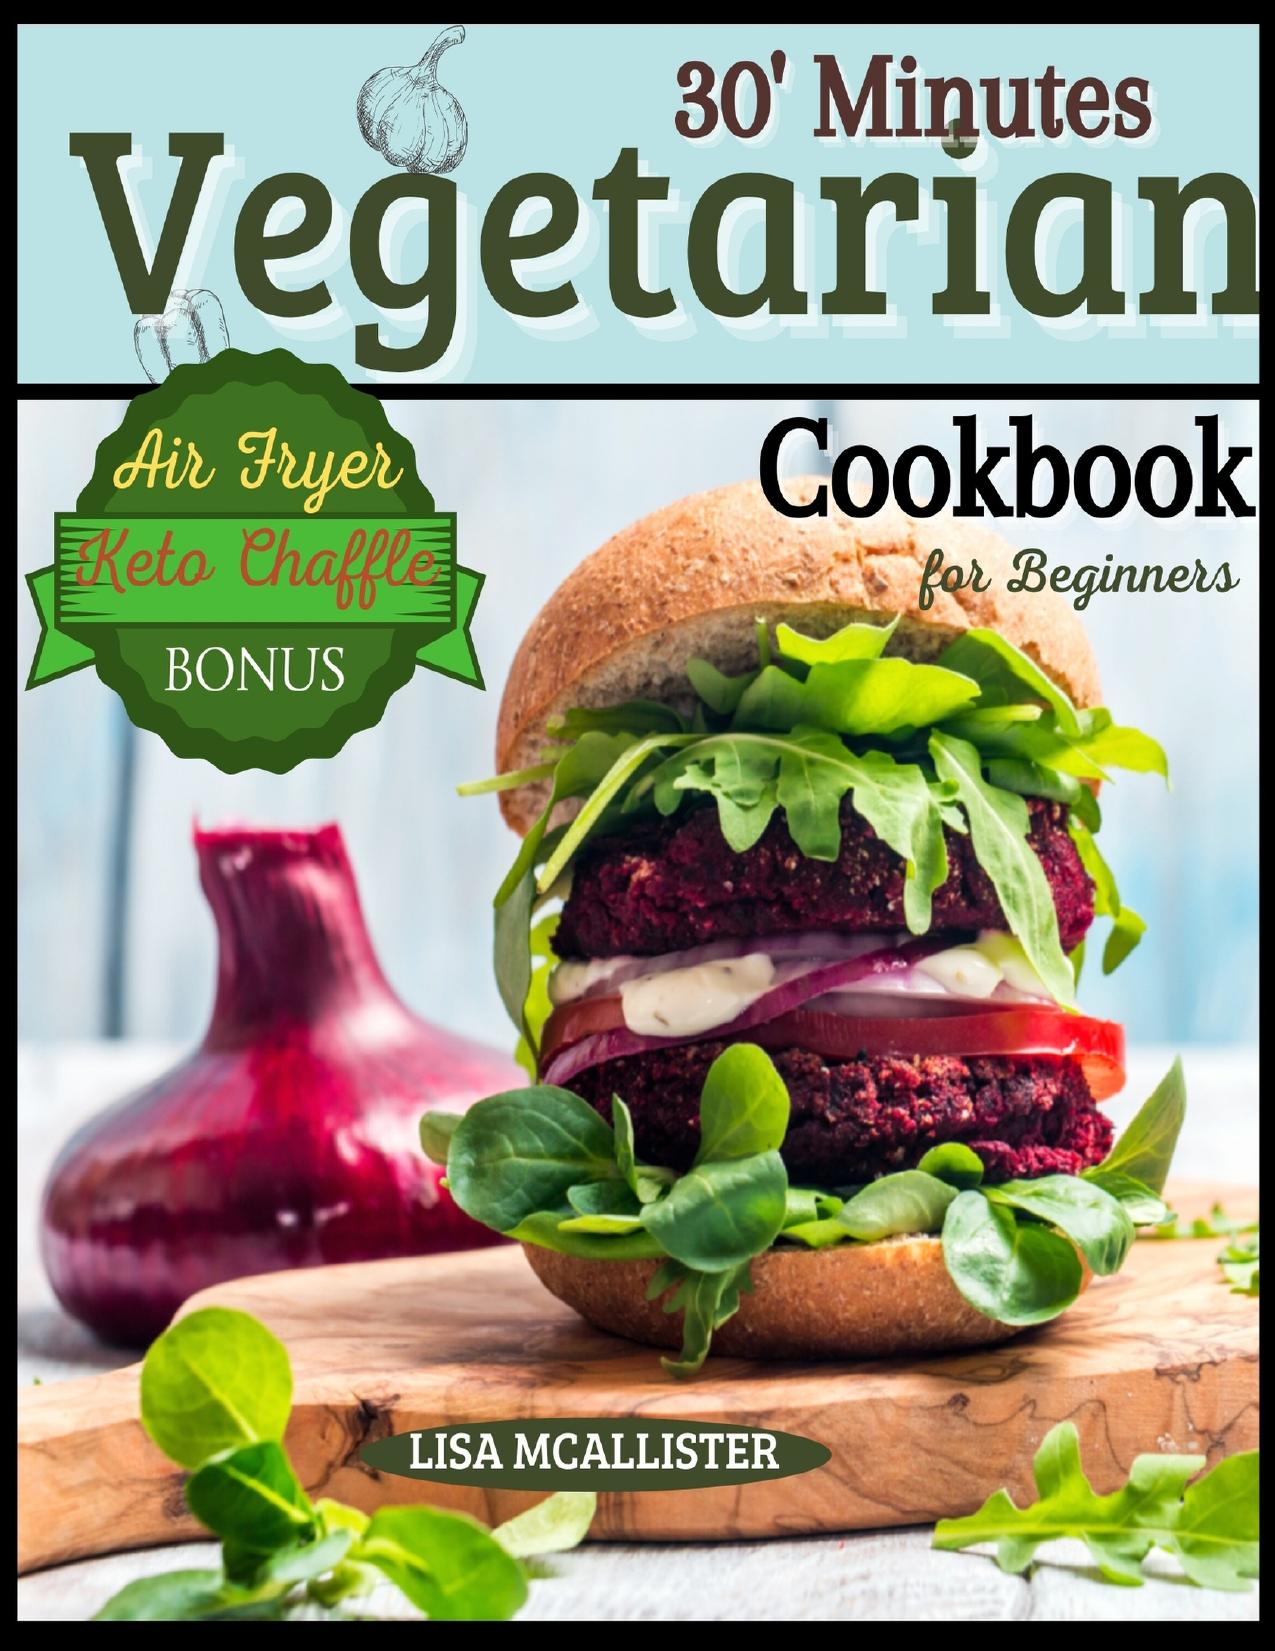 30â Minutes Vegetarian Cookbook for Beginners : Easy and Amazing Recipes for Your Air Fryer | Special Bonus: Keto Chaffle Tasty Dishes by McAllister Lisa